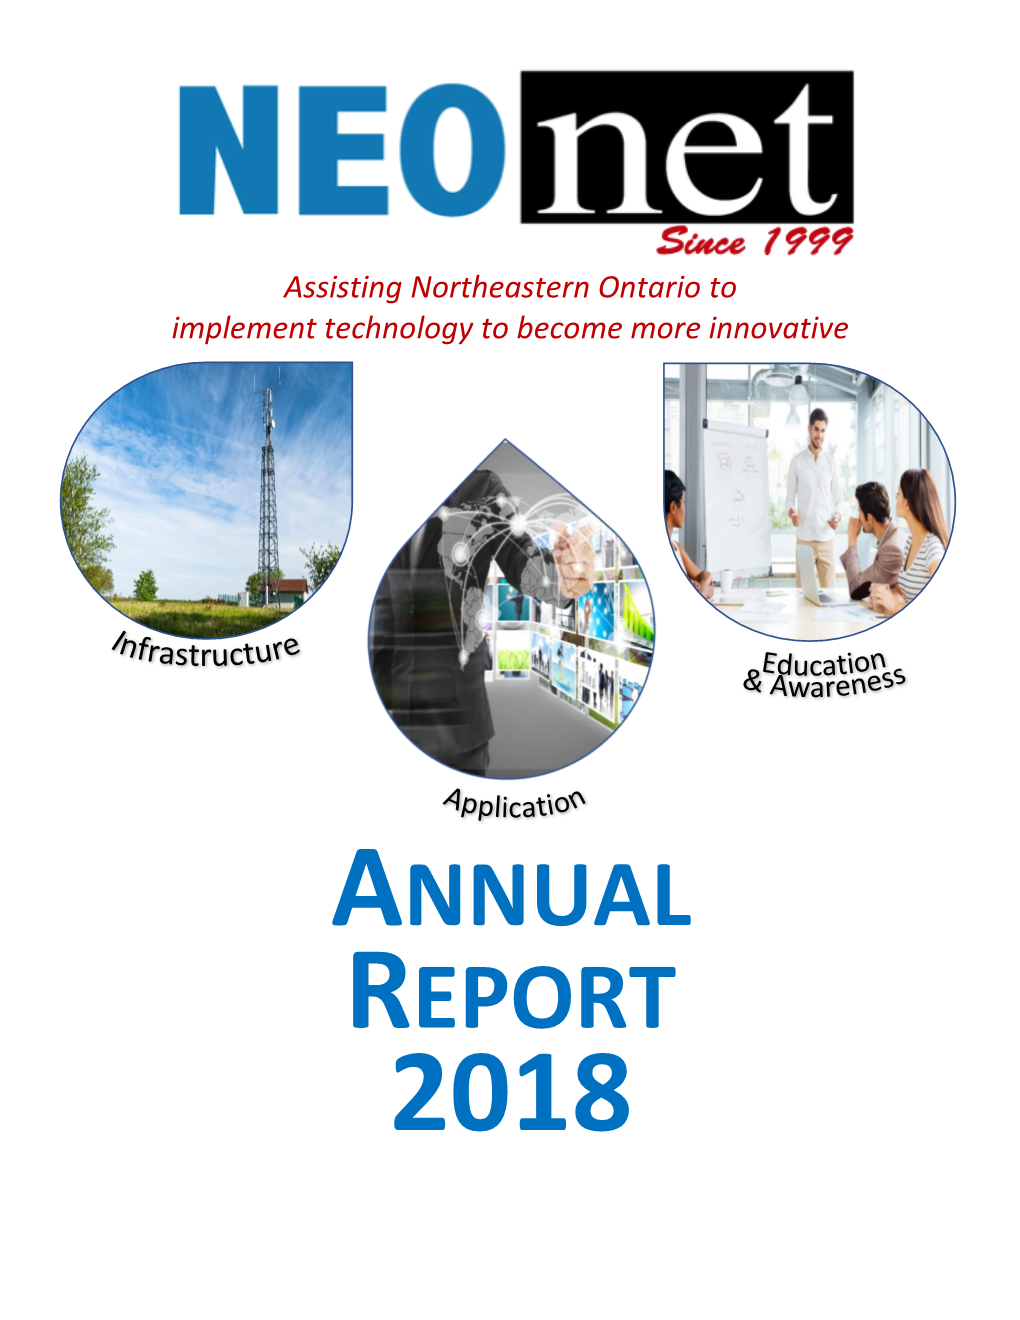 Neonet 2018 Annual Report